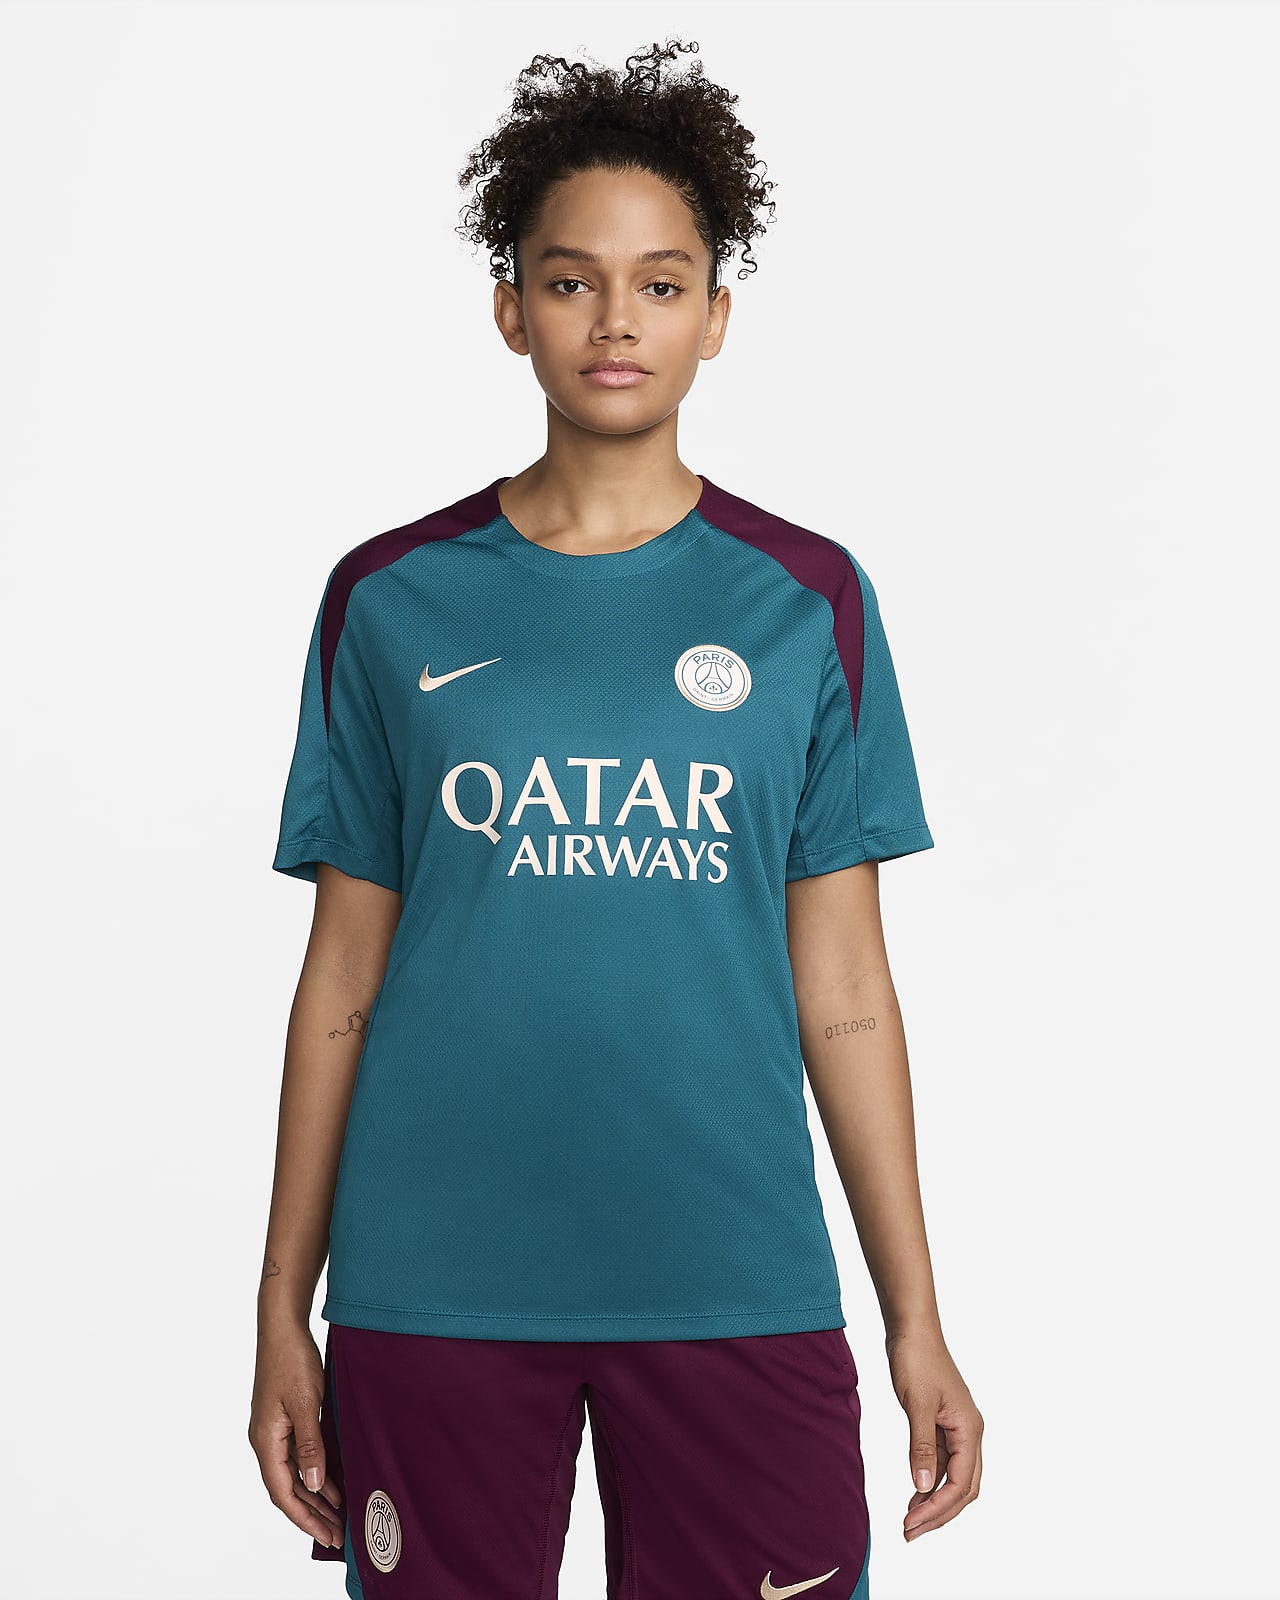 Ανδρική ποδοσφαιρική κοντομάνικη πλεκτή μπλούζα Nike Dri-FIT Παρί Σεν Ζερμέν Strike